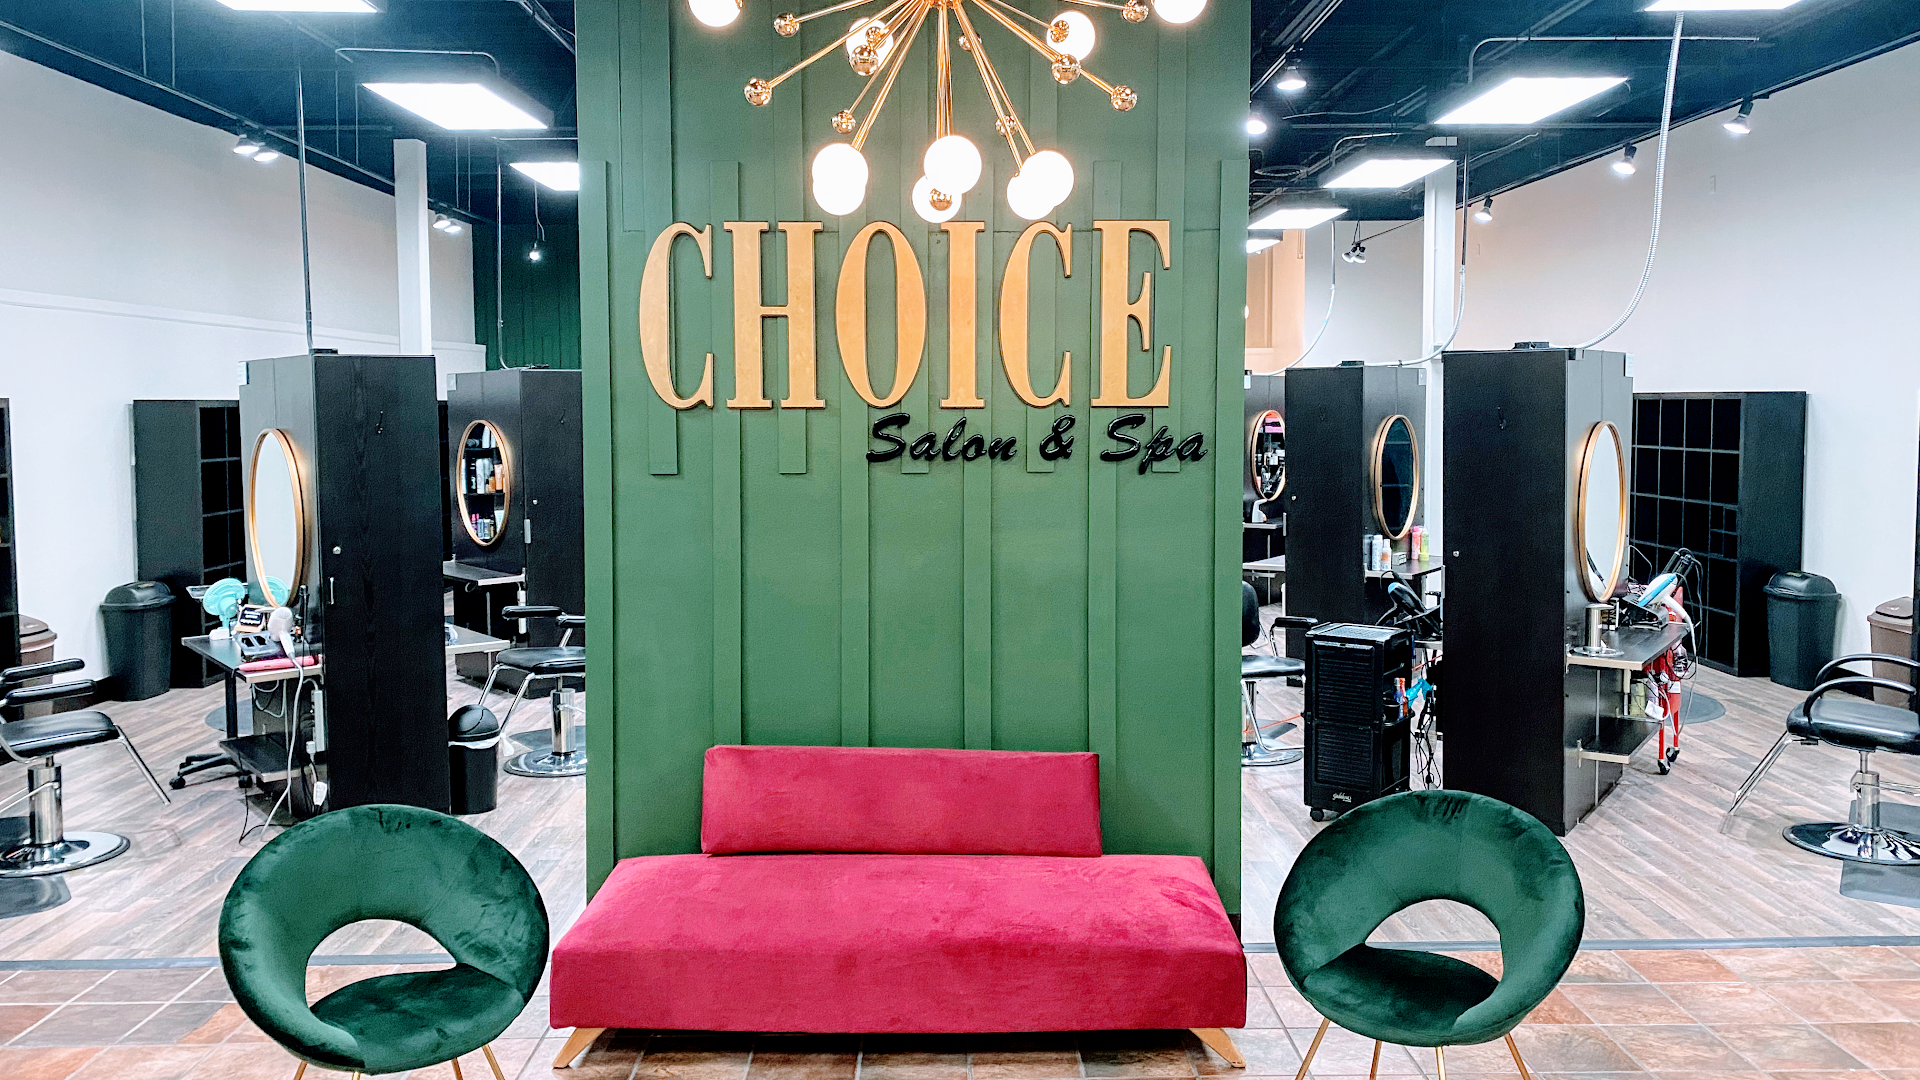 The Choice Salon and Spa